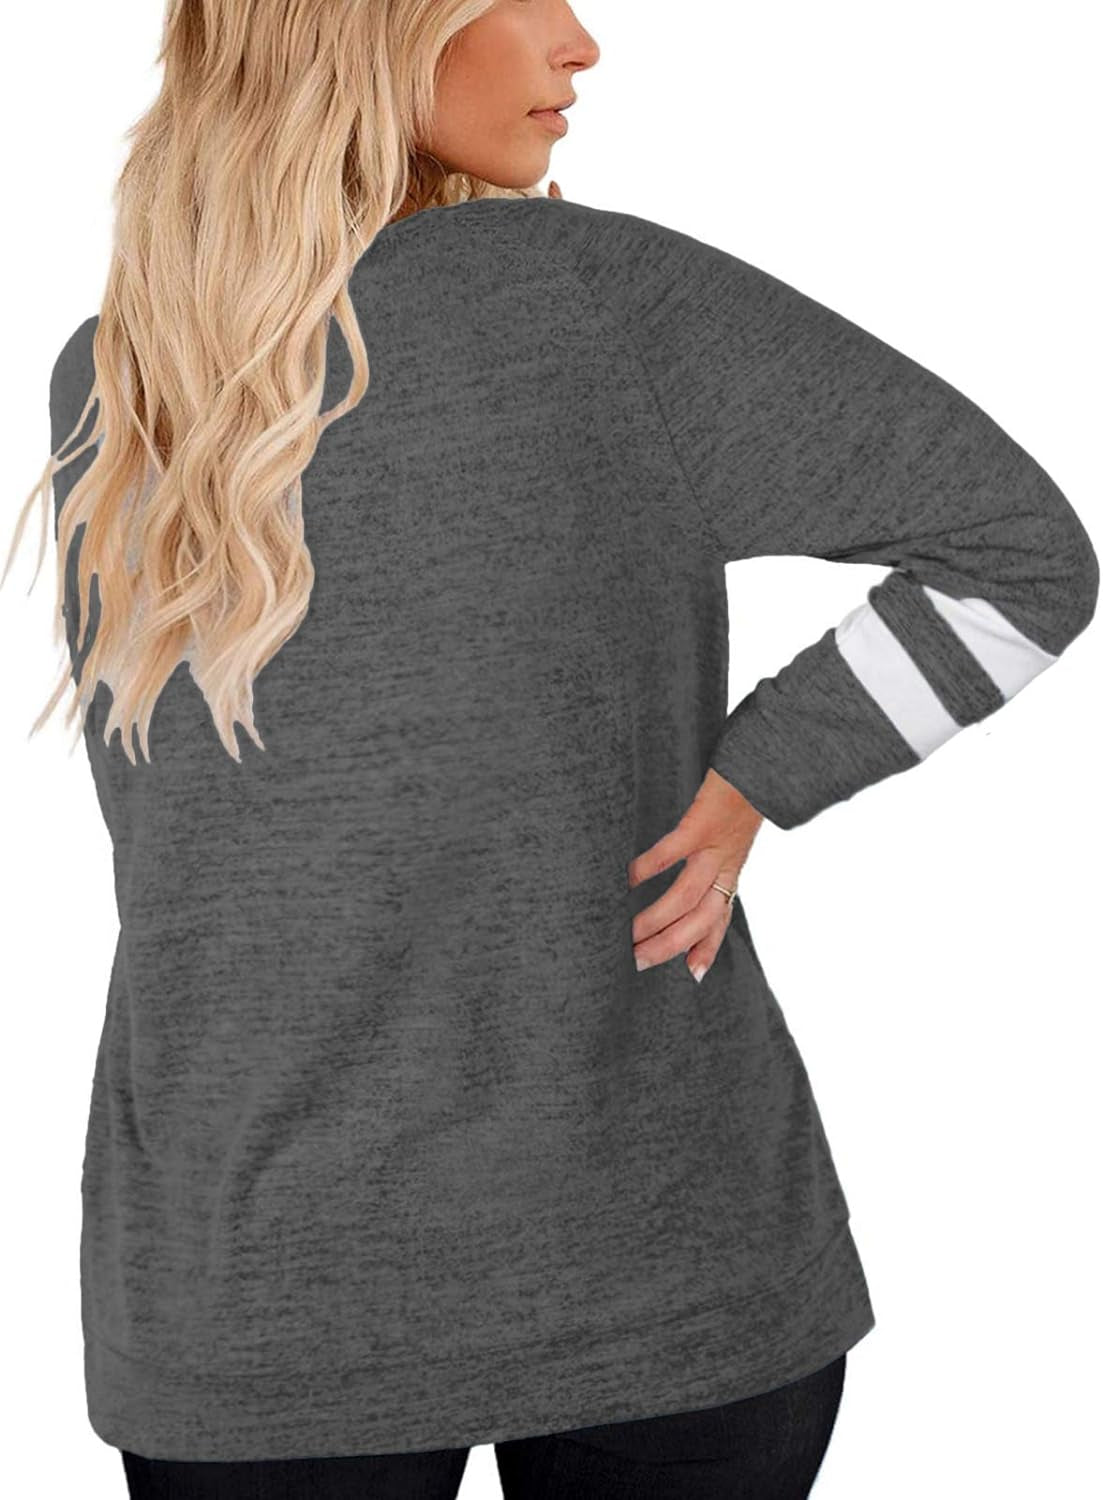 "Women's Long Sleeve Plus Size Tunic Tops: Stylish and Comfortable Sweatshirts"